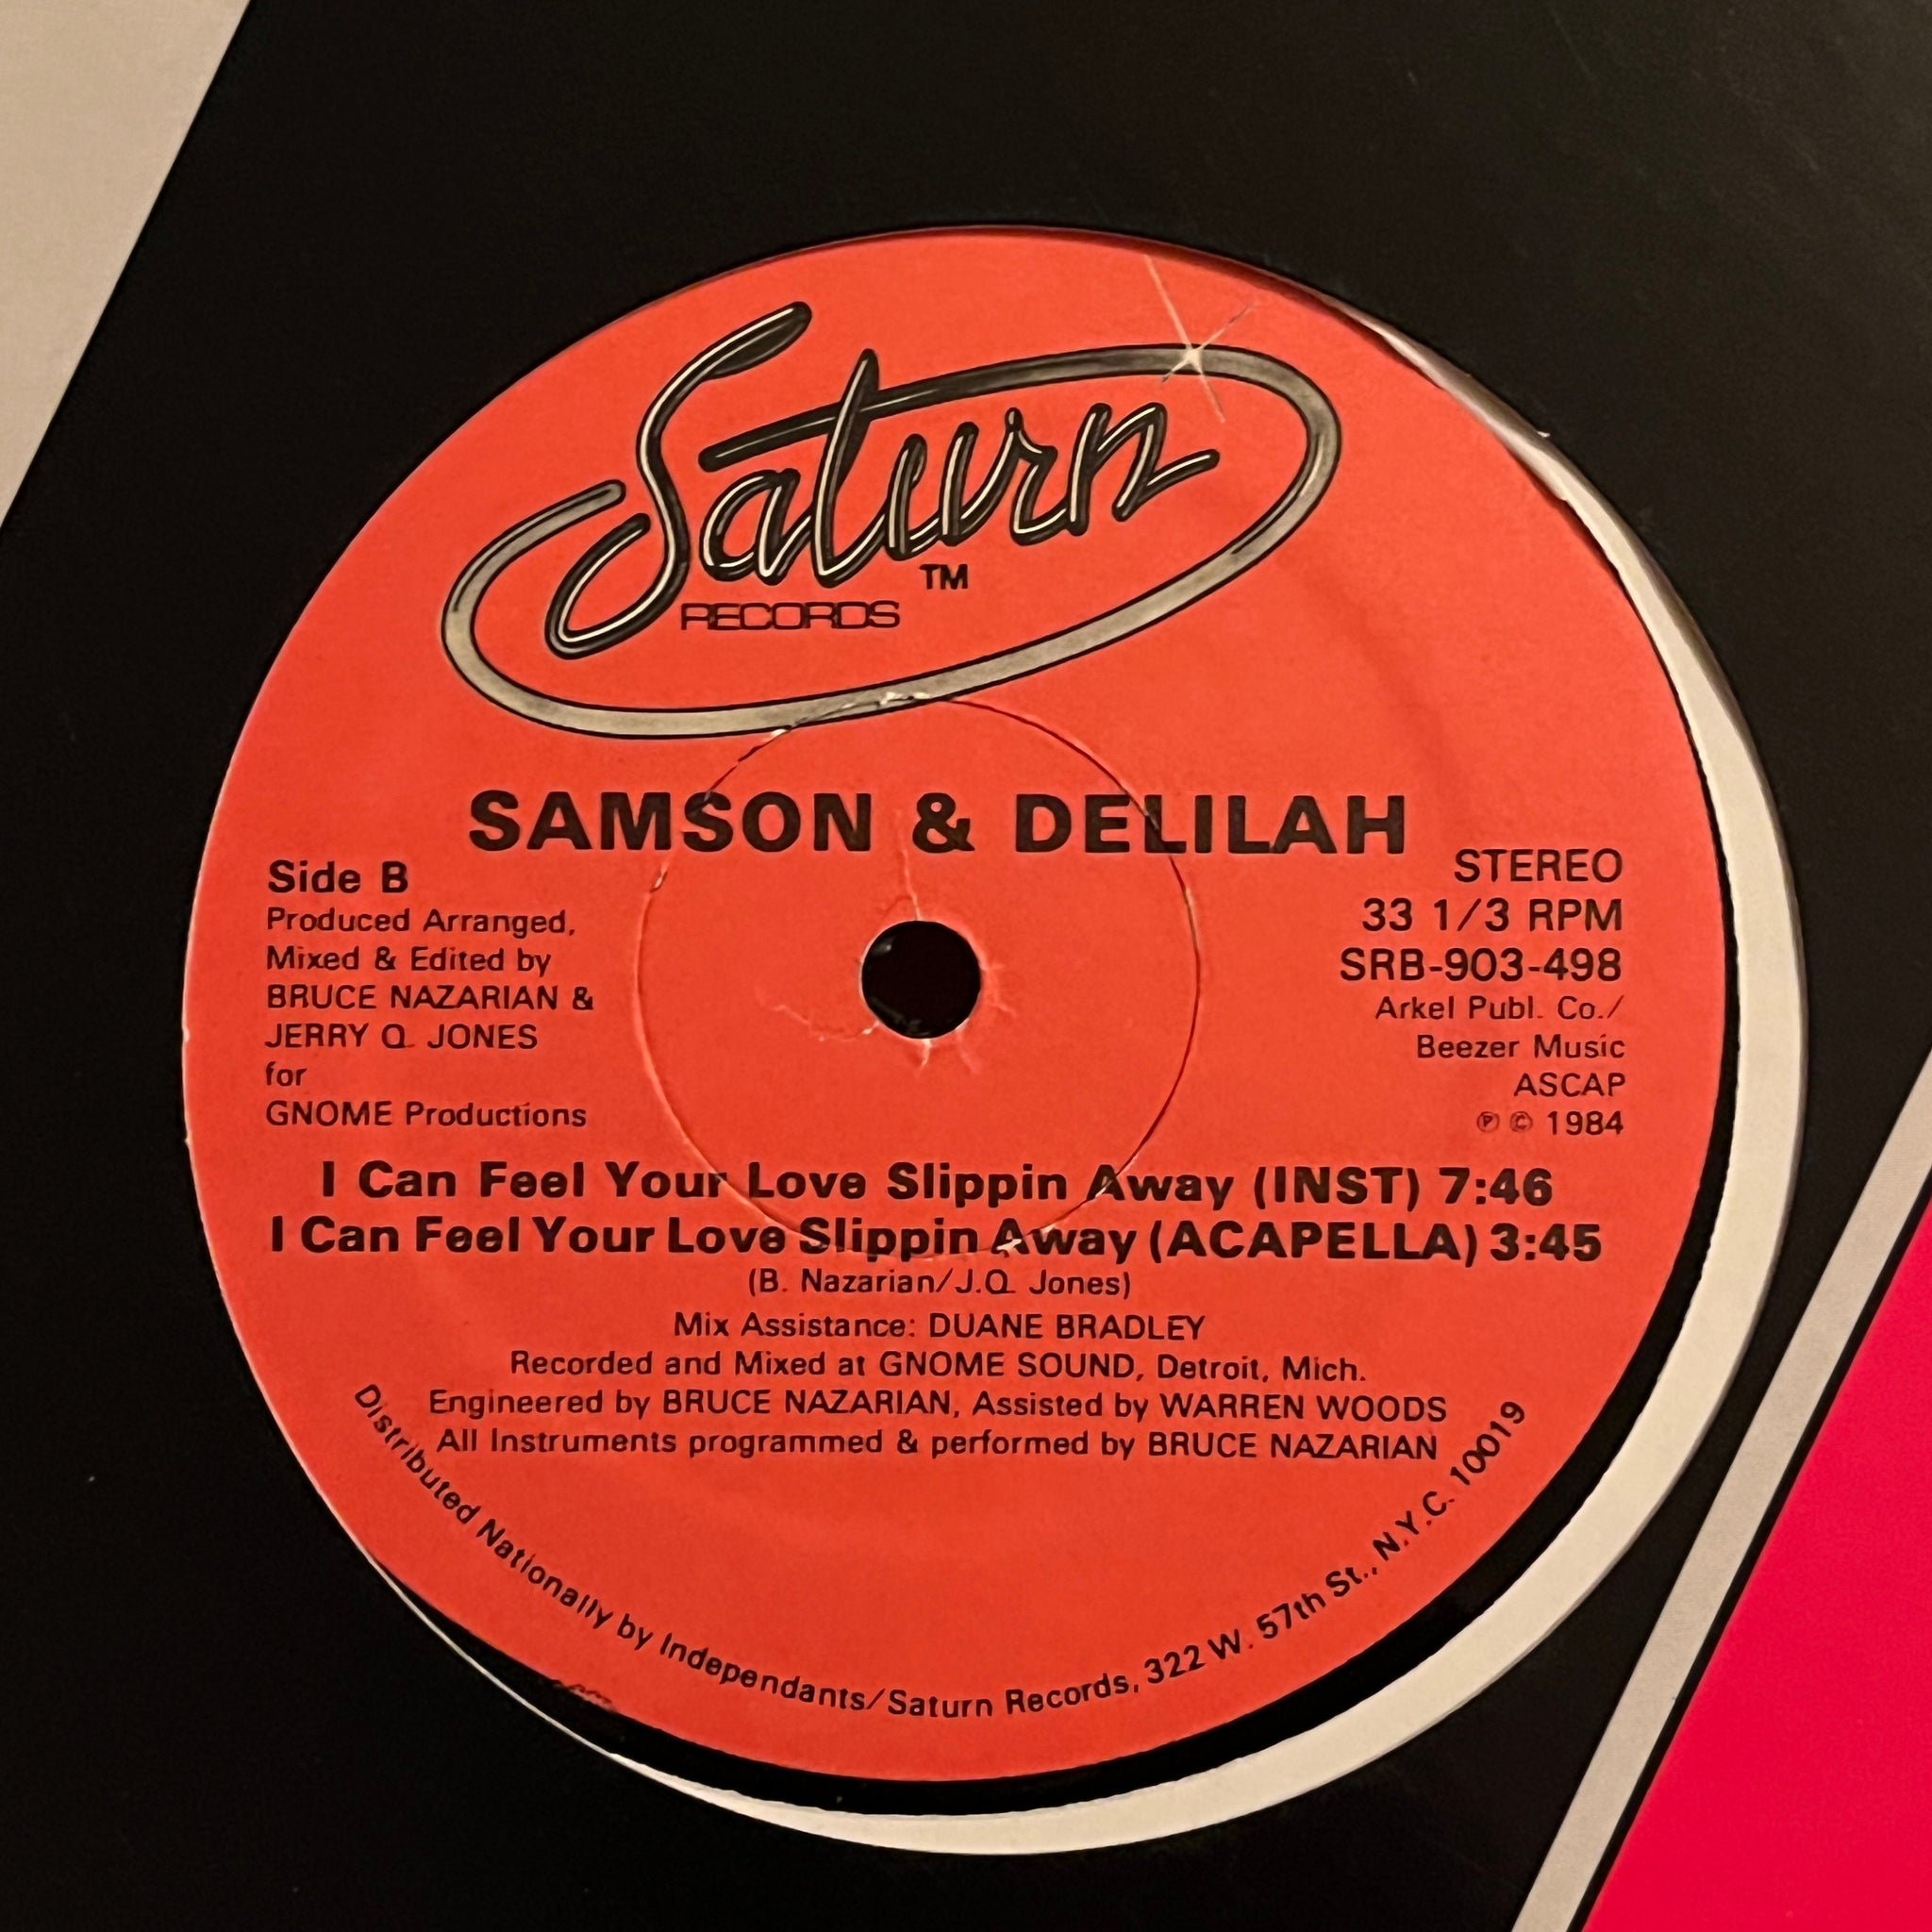 Samson & Delilah – I Can Feel Your Love Slippin Away